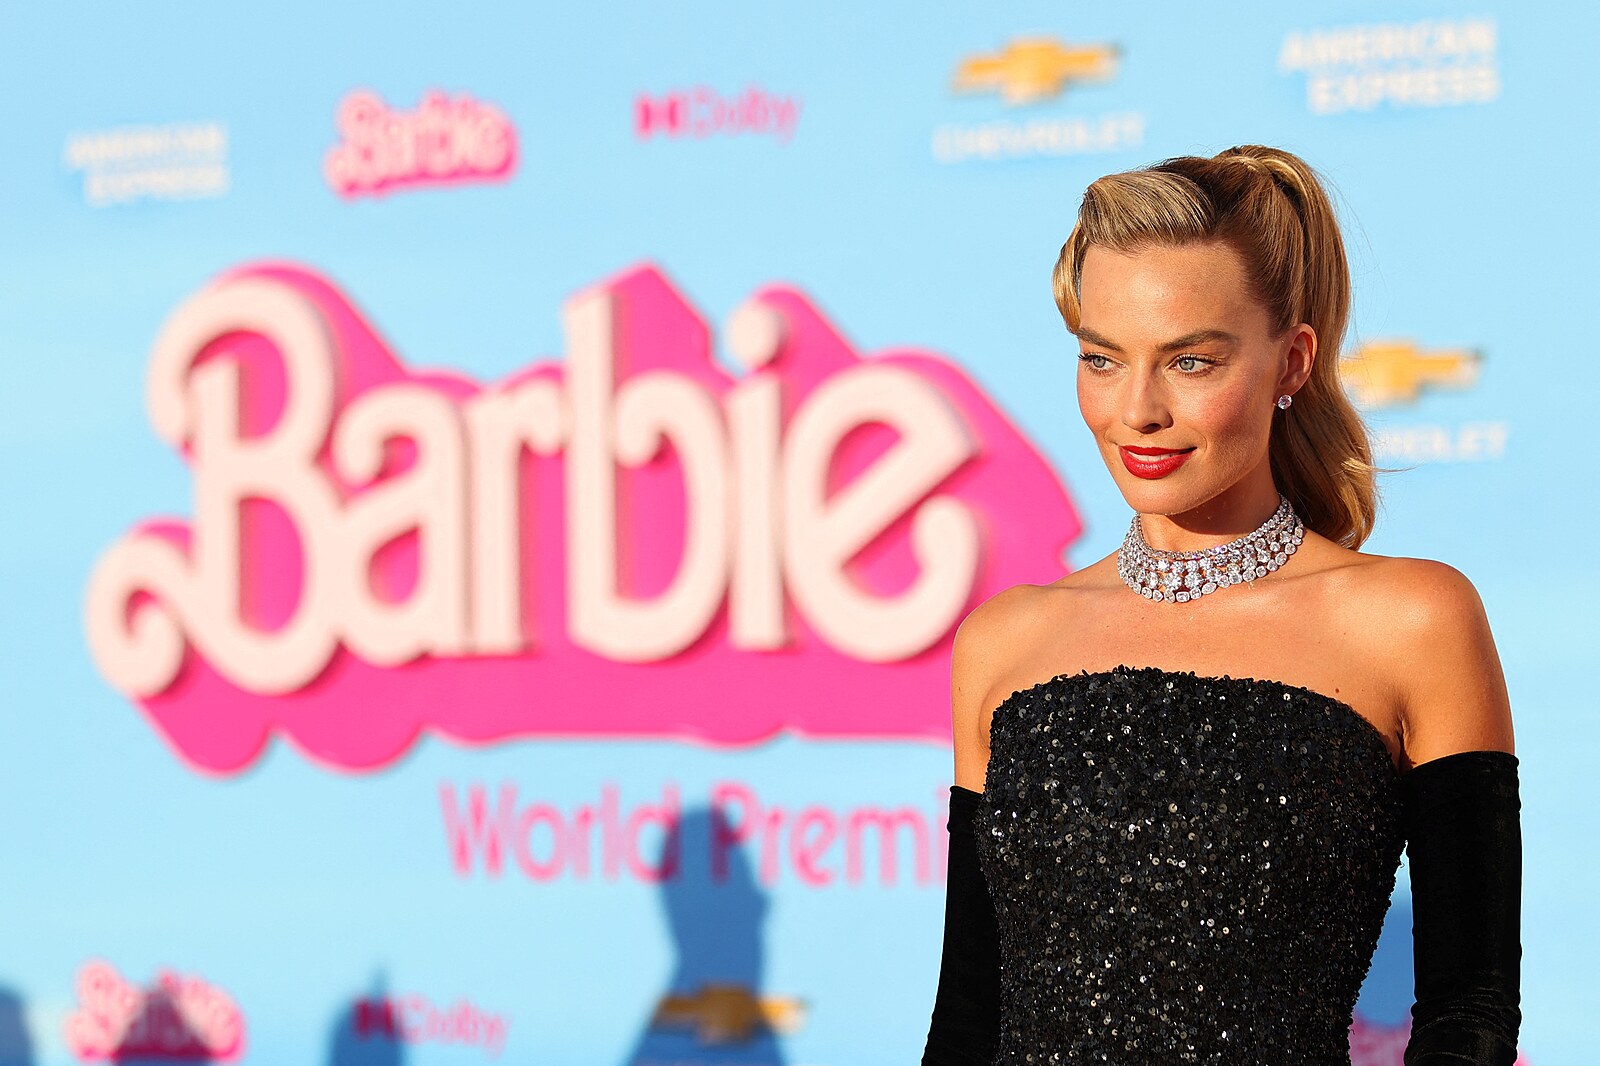 Hloupá“ Barbie jde do světa. Nadšení fanoušků mě šokuje, říká Margot Robbie  - iDNES.cz